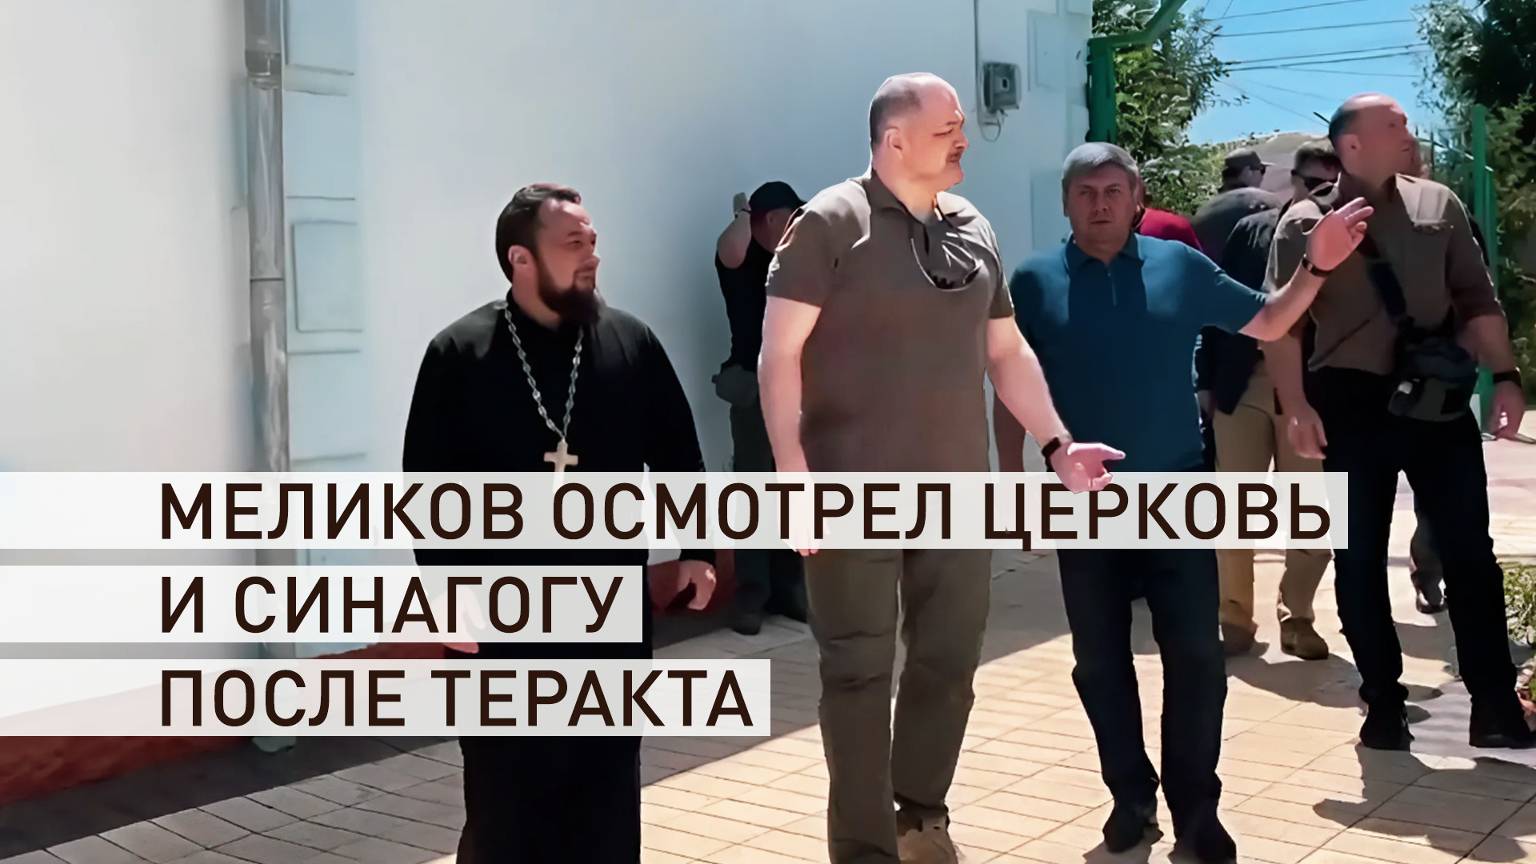 Глава Дагестана прибыл в Дербент, где произошли теракты в синагоге и церкви — видео